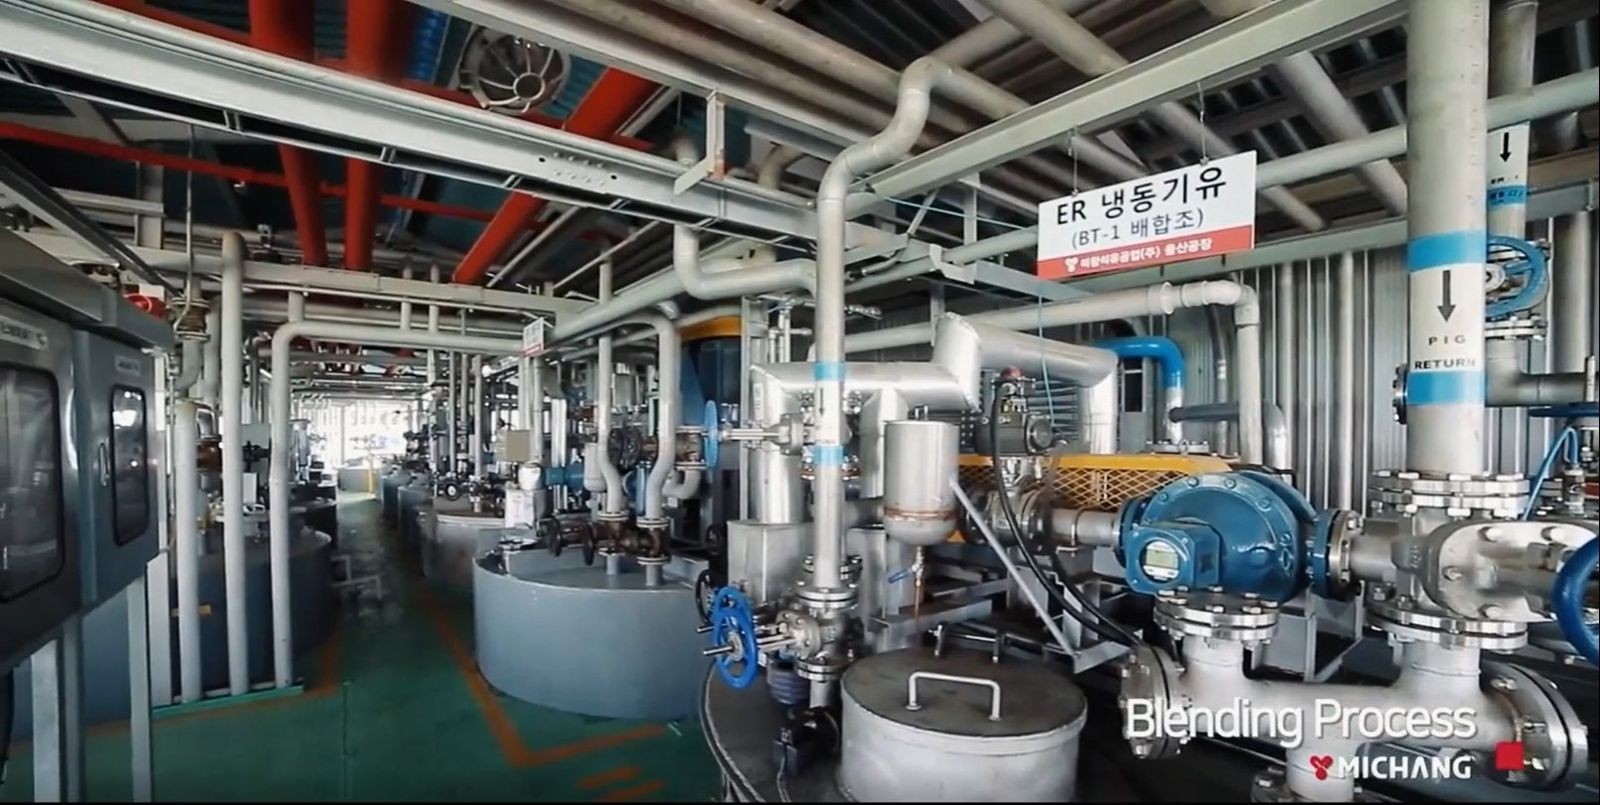 Корейские моторные масла MICKING с расширенной гарантией от производителя